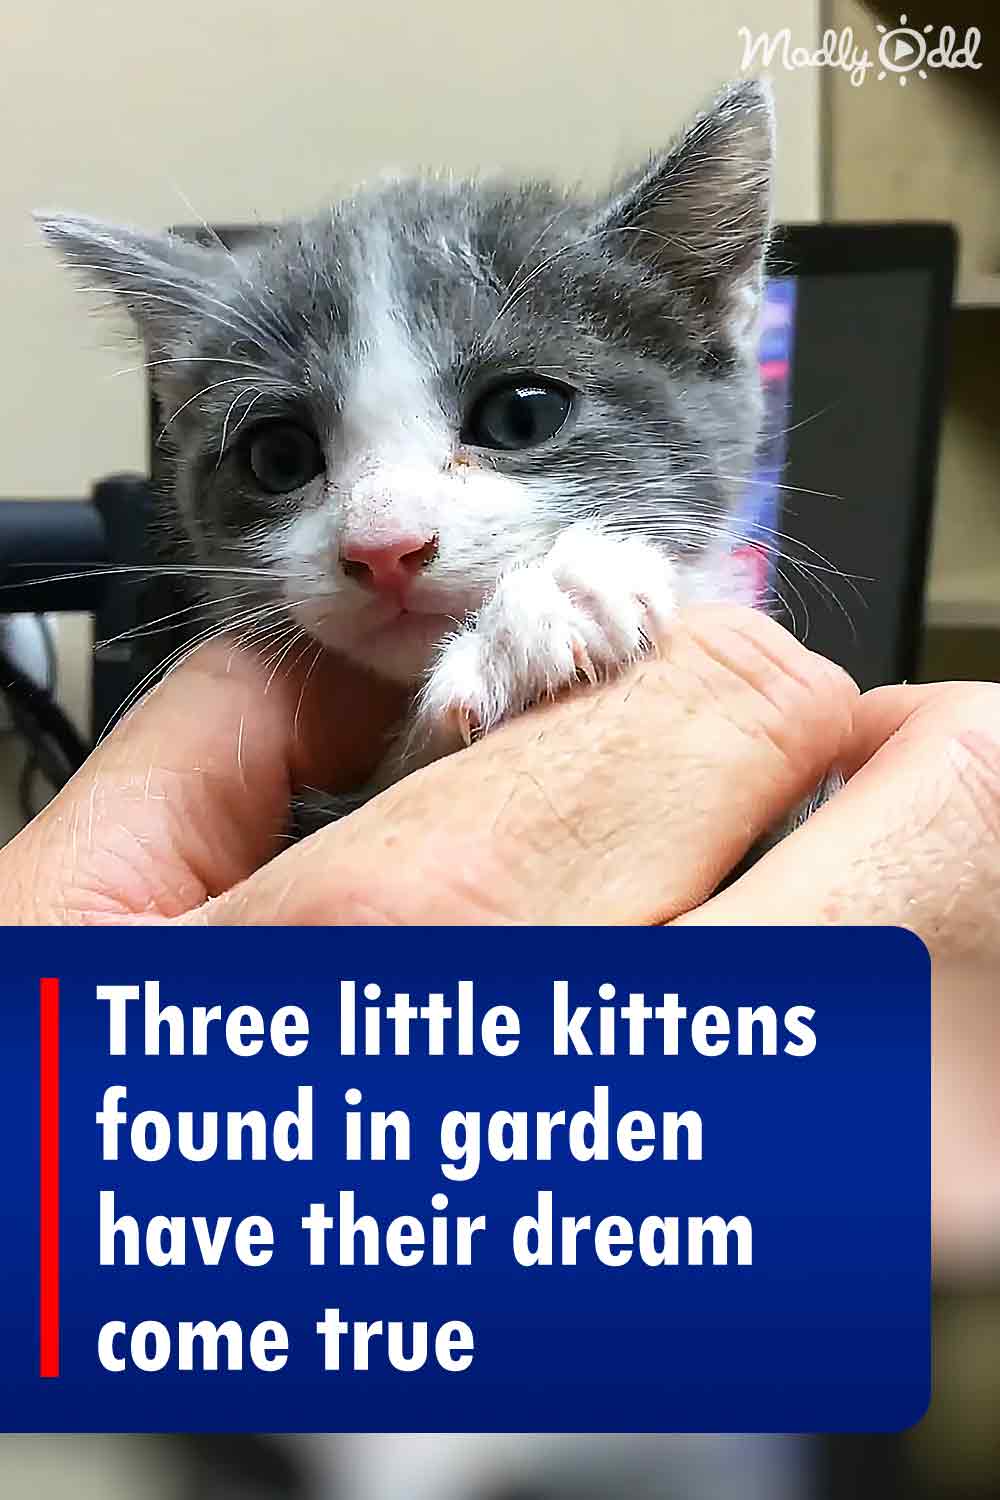 Three little kittens found in garden have their dream come true